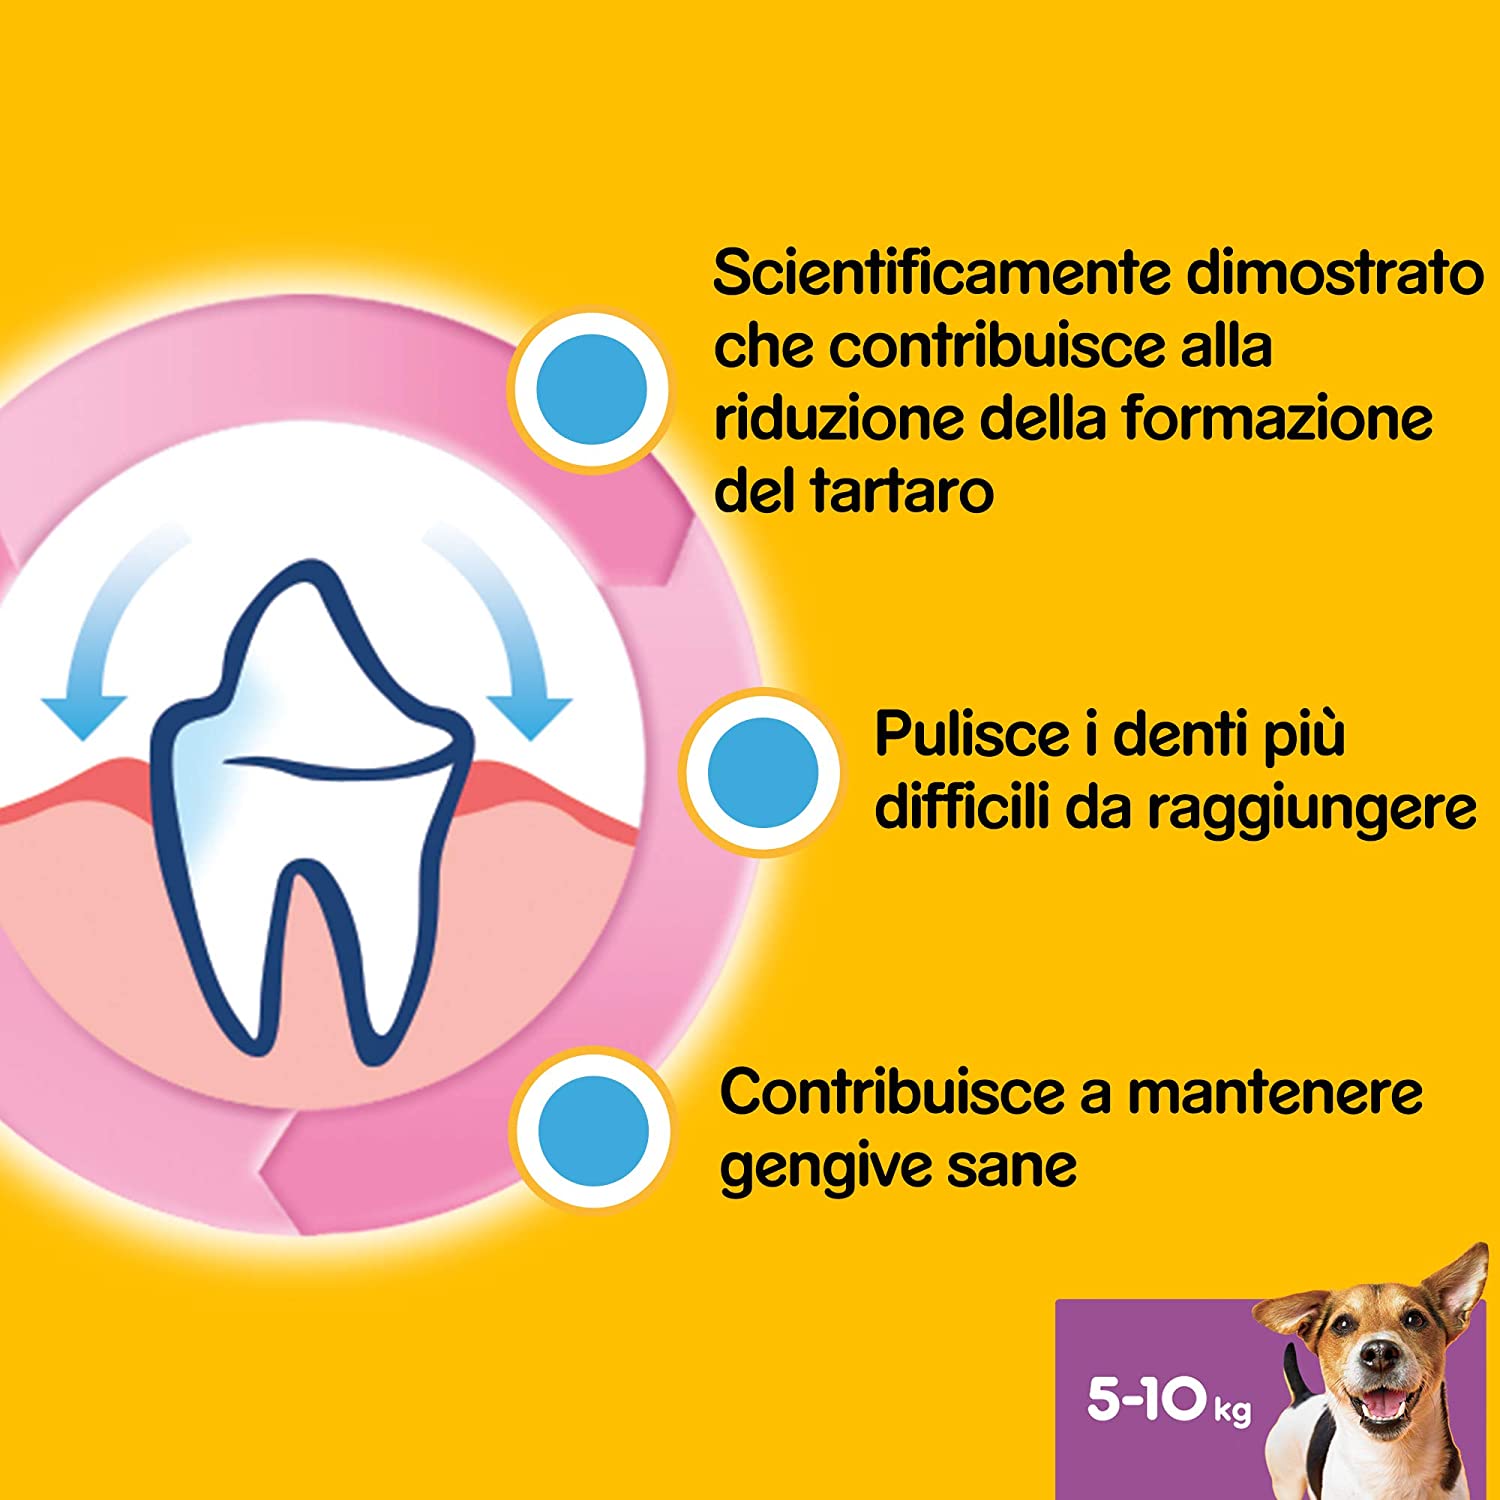 Pedigree Dentastix Snack per l'Igiene Orale, Cane Medio (10-25 Kg - 2.94 kg), 105 Pezzi